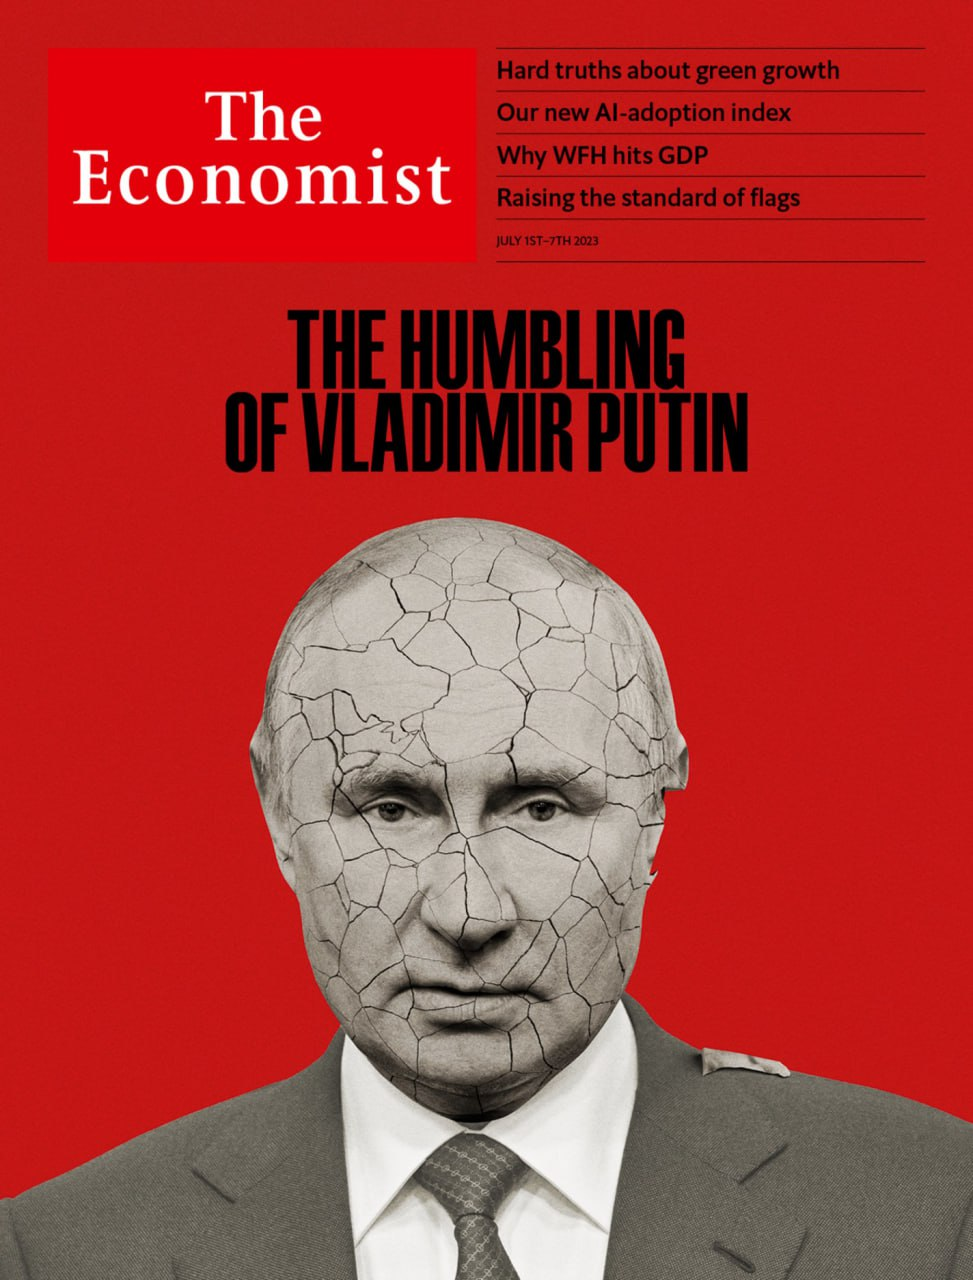 سرنوشت پوتین از نگاه اکونومیست